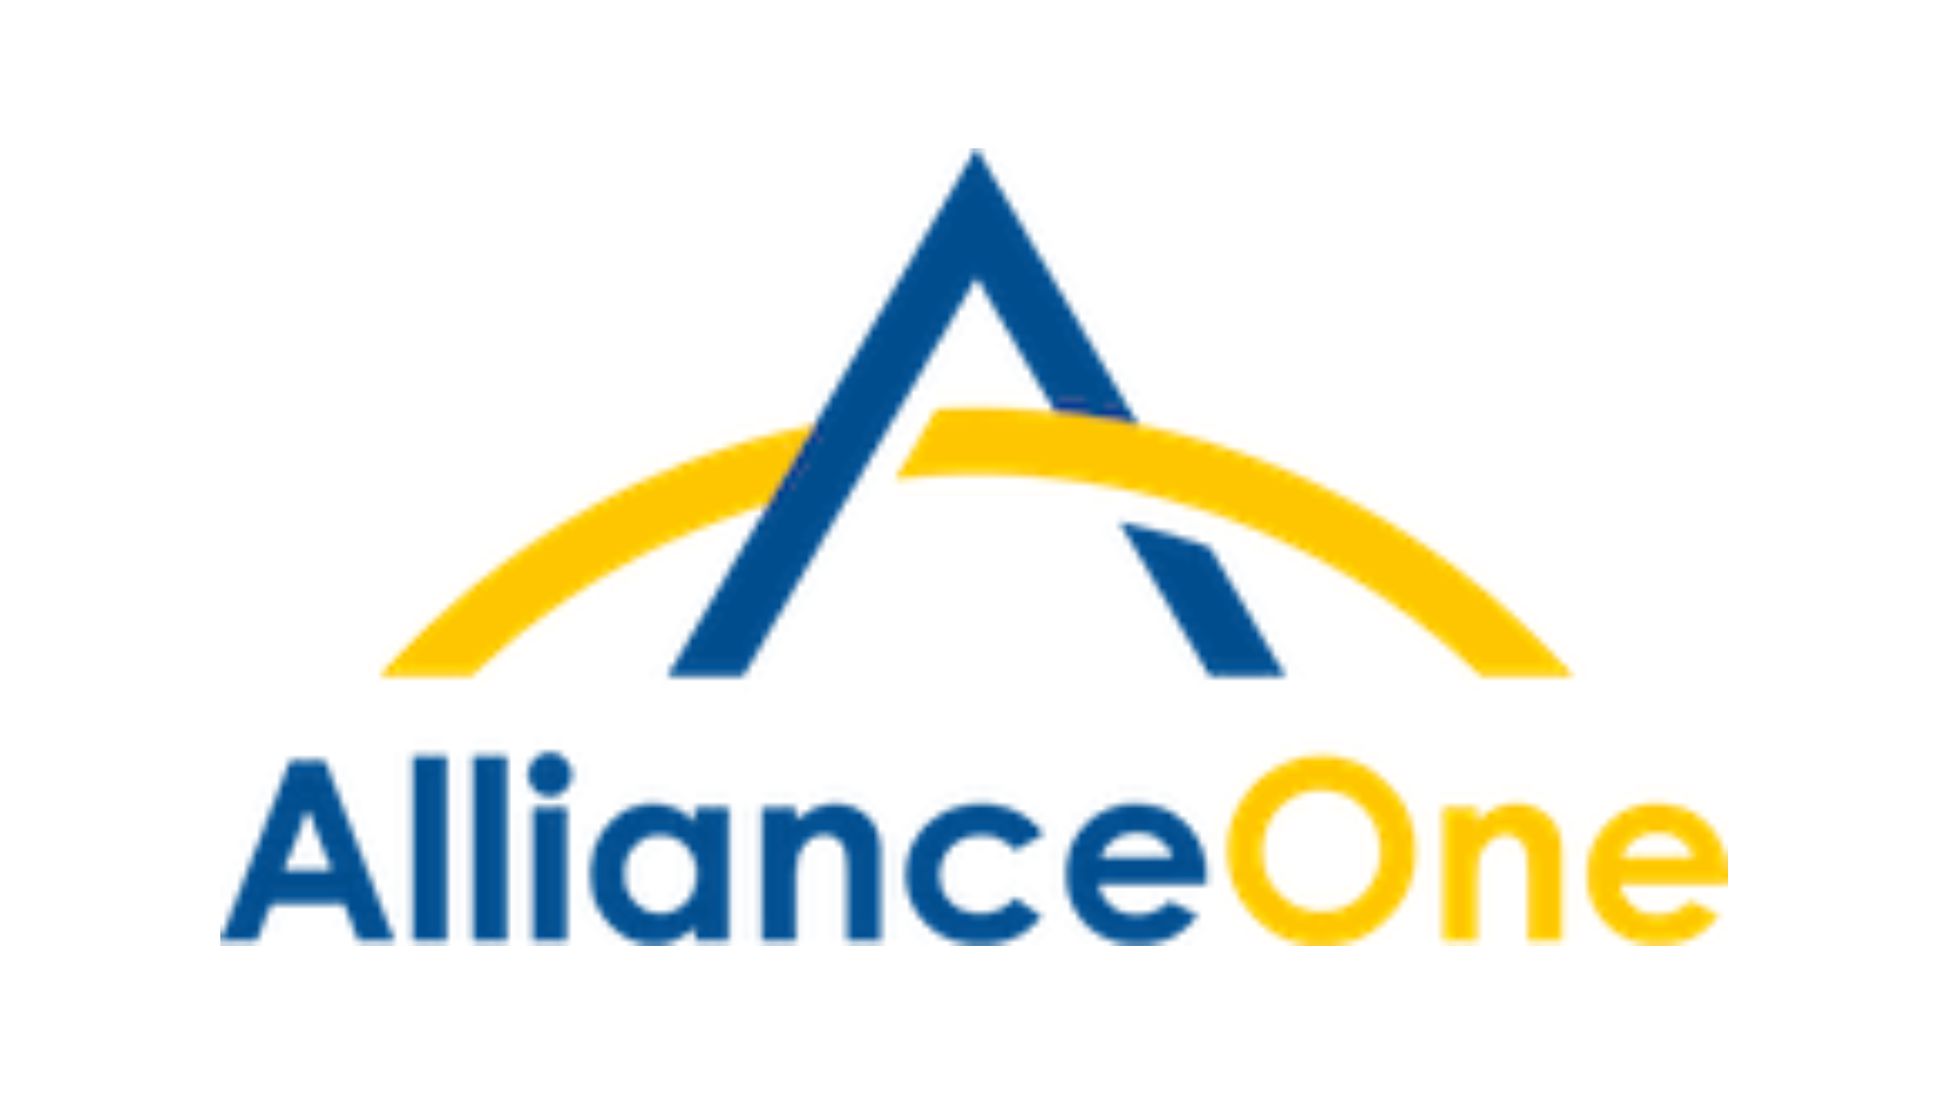 Alliance One – Malawi